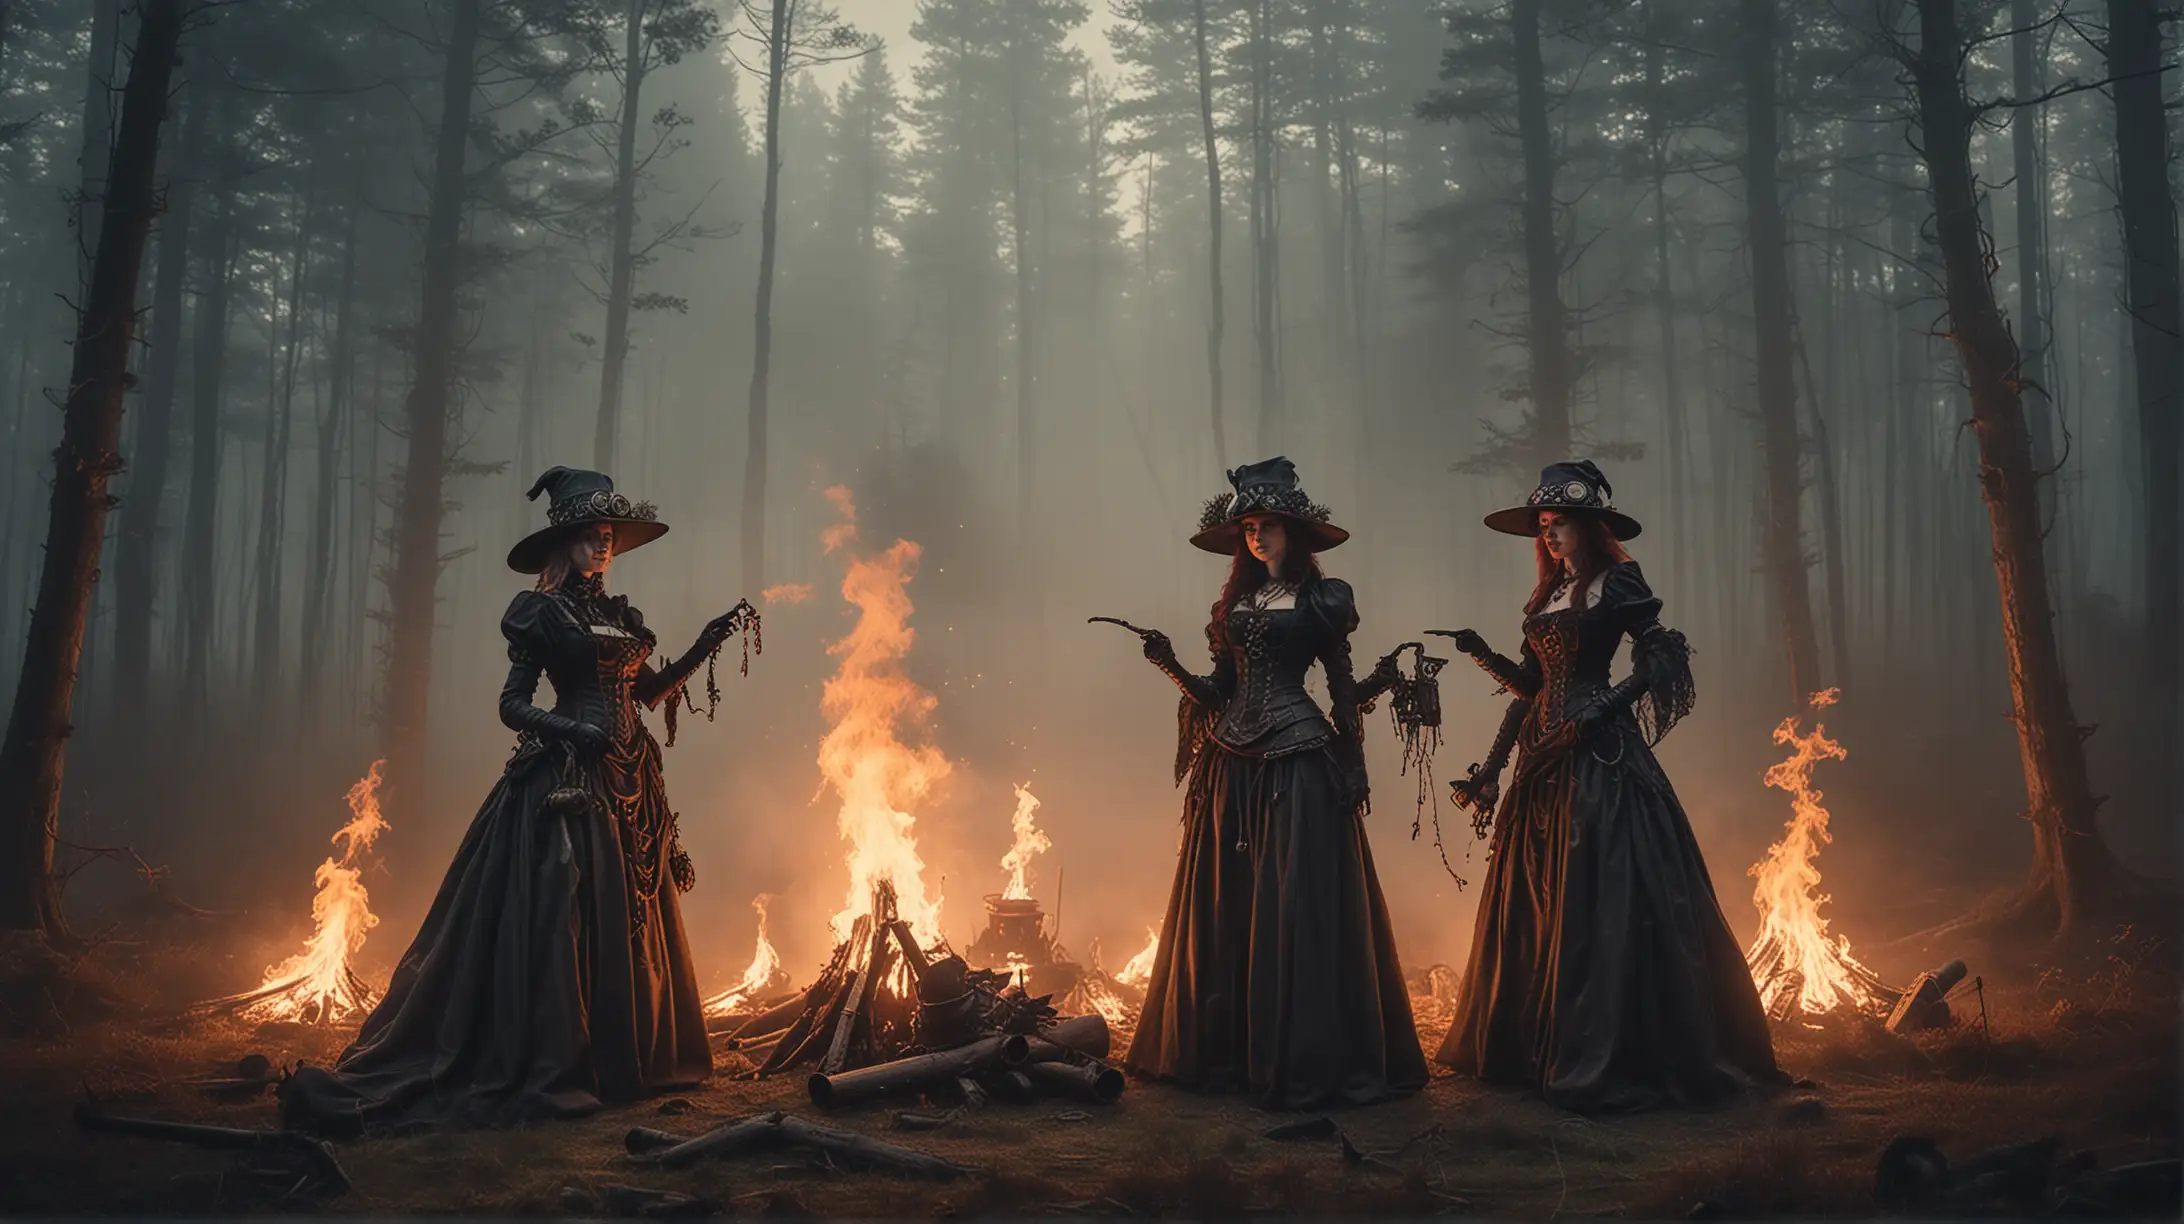 Steampunk Witches Gathering Around Balefire in Dark Forest Glade